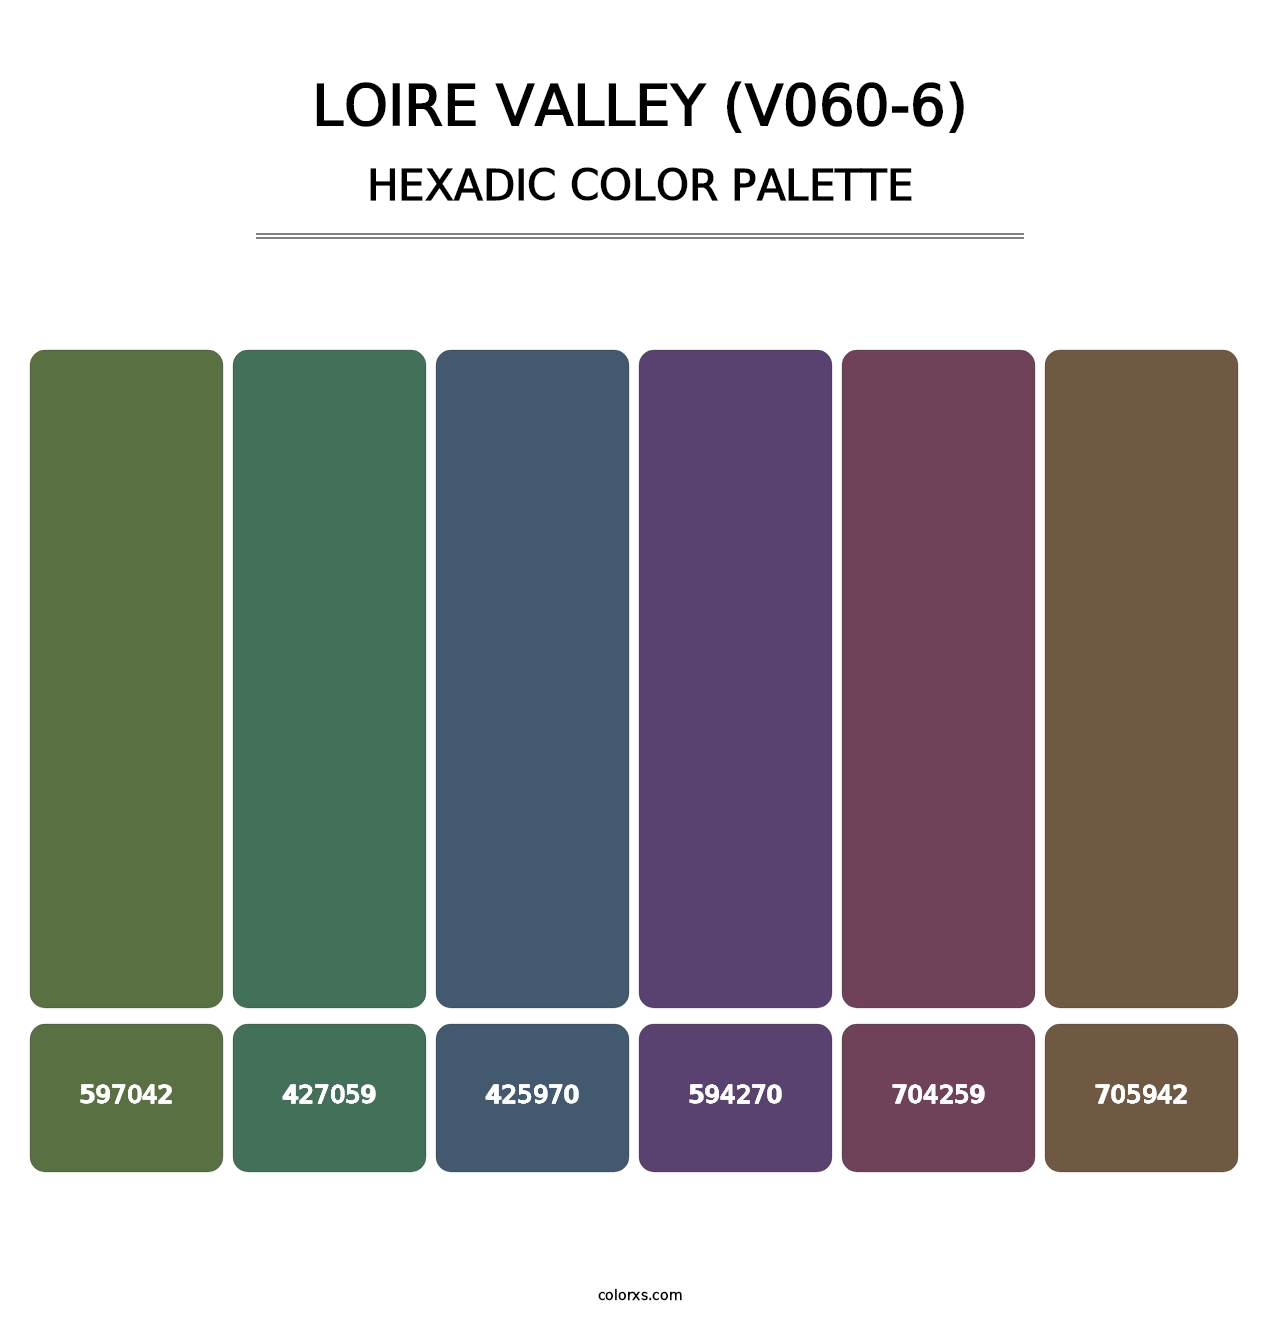 Loire Valley (V060-6) - Hexadic Color Palette